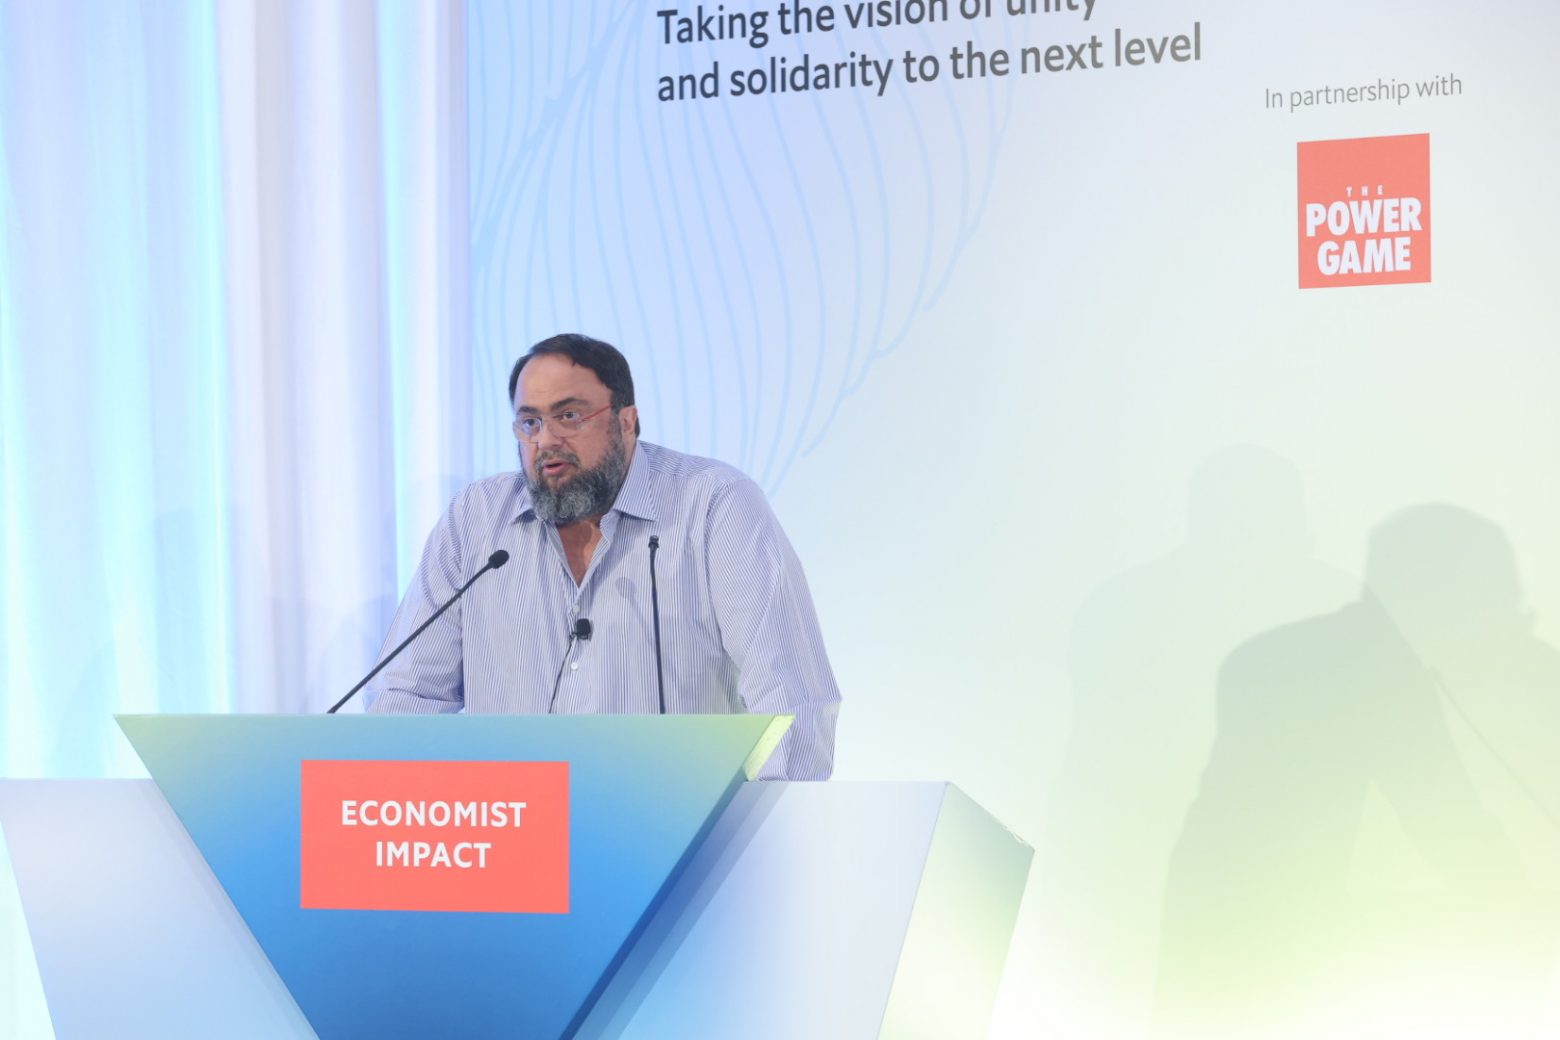 Μαρινάκης στον Economist: Να επιταχύνουμε την πράσινη επανάσταση στη ναυτιλία